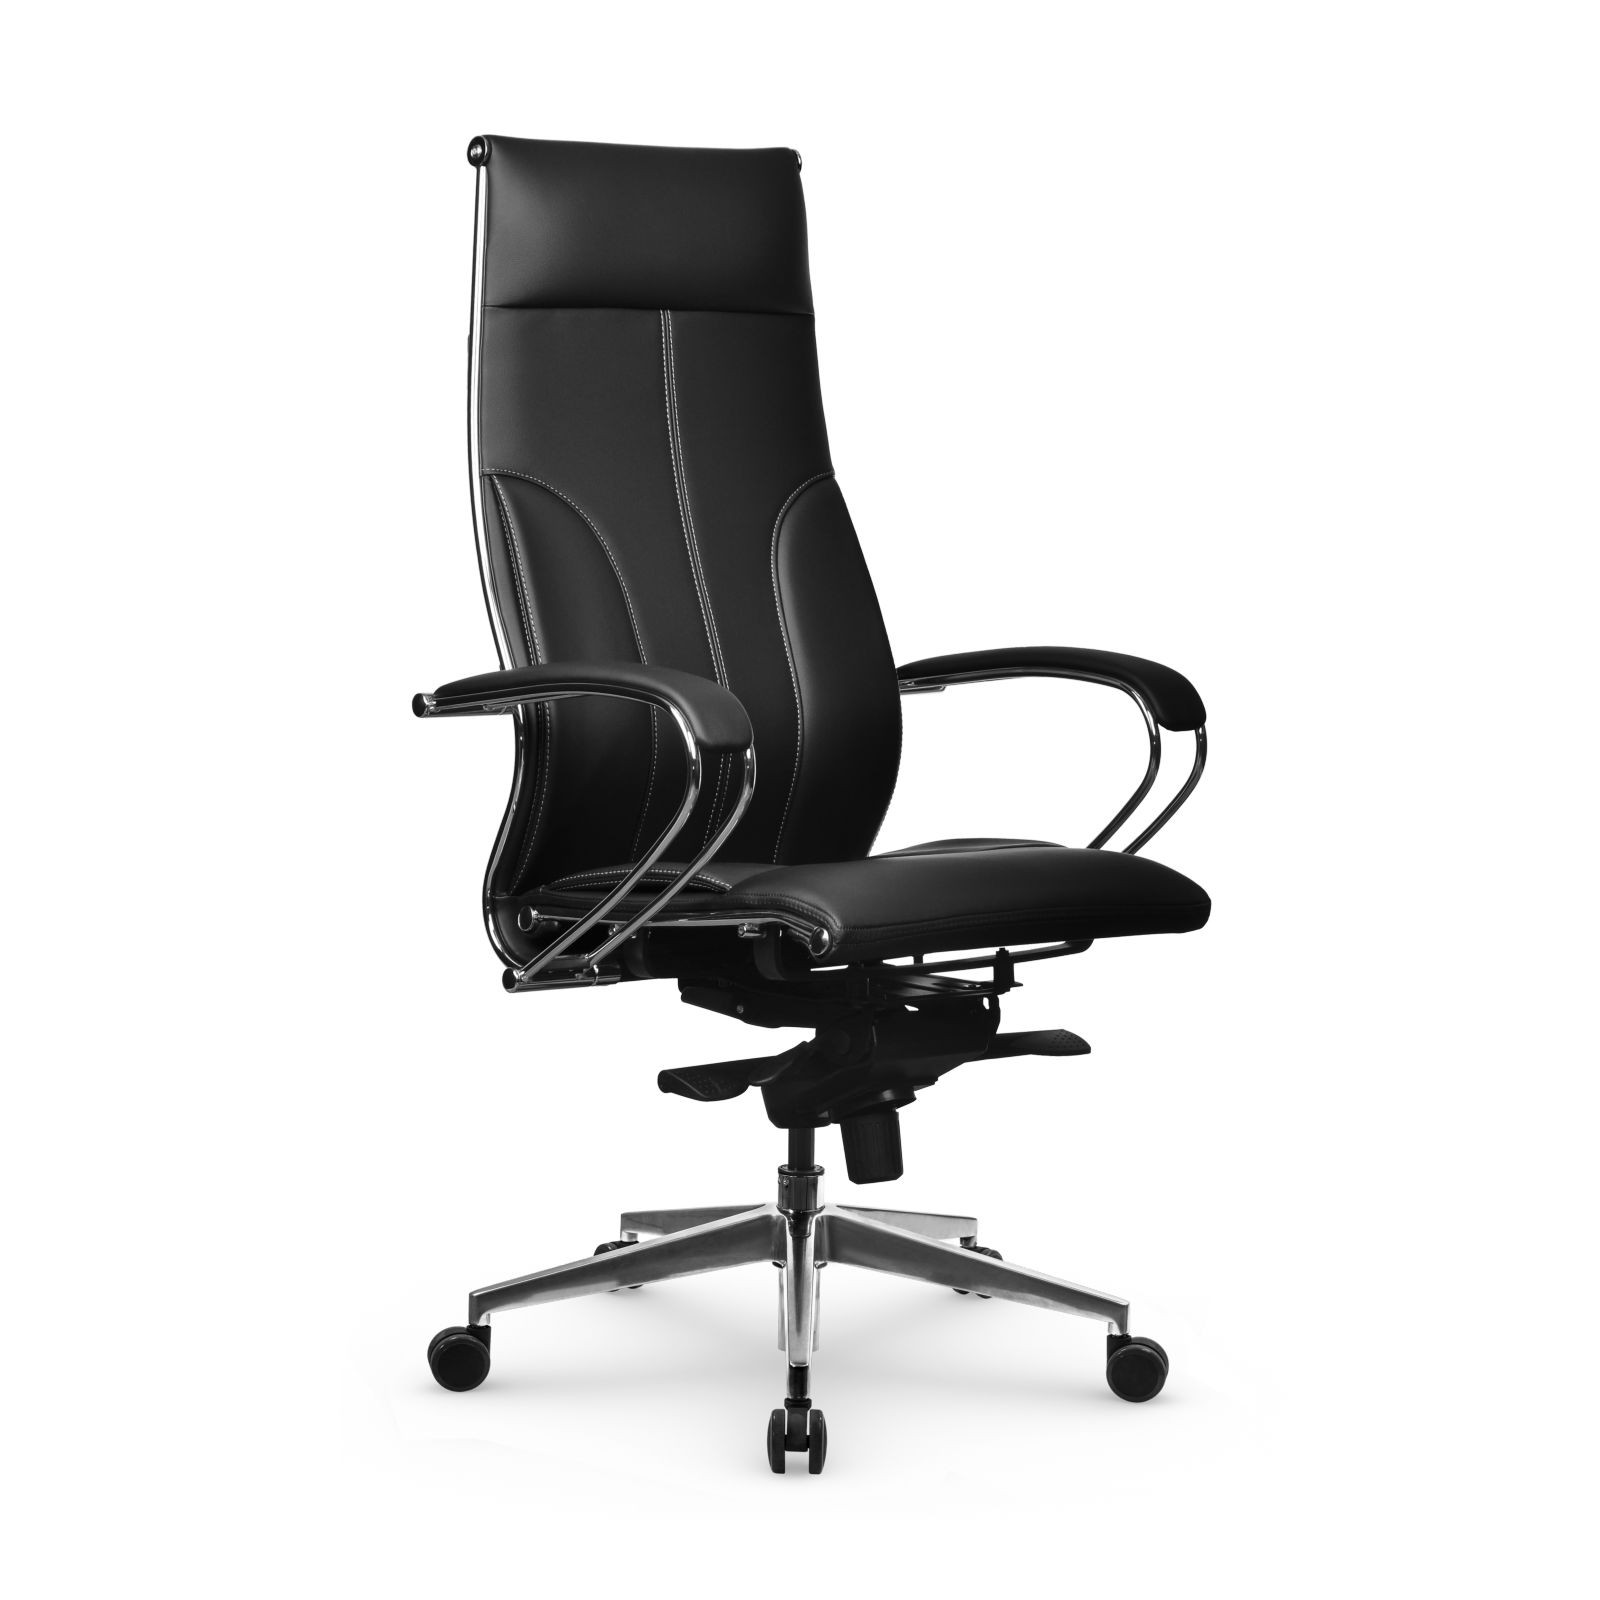 Кресло Samurai Lux-11 MPES, кресло Метта с механизмом качания, кресло компьютерное, кресло офисное, кресло самурай, кресло для дома и офиса (Черный)